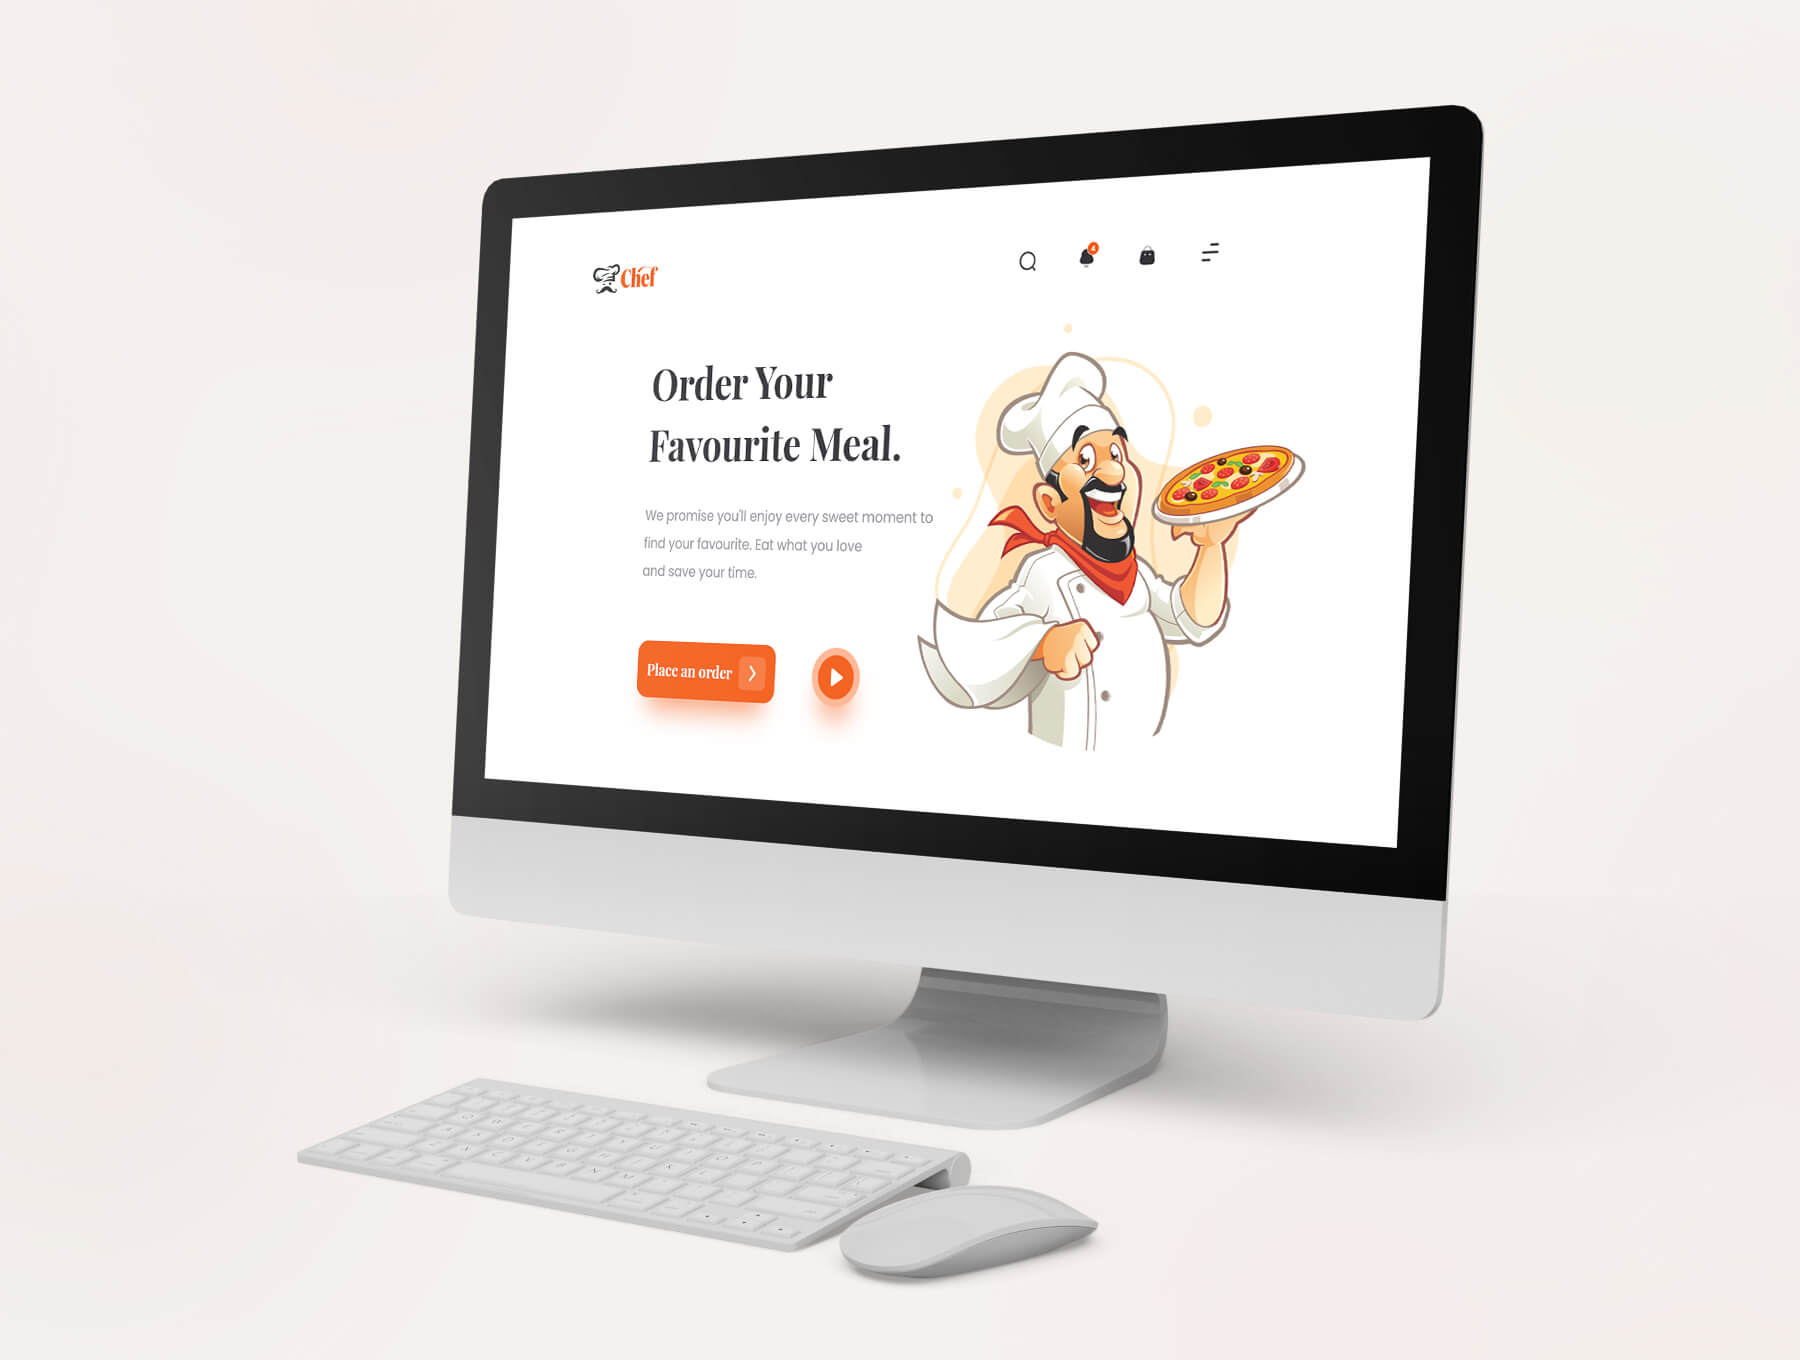 简约干净的插画风餐饮美食官网落地页WEB UI界面设计 .xd素材